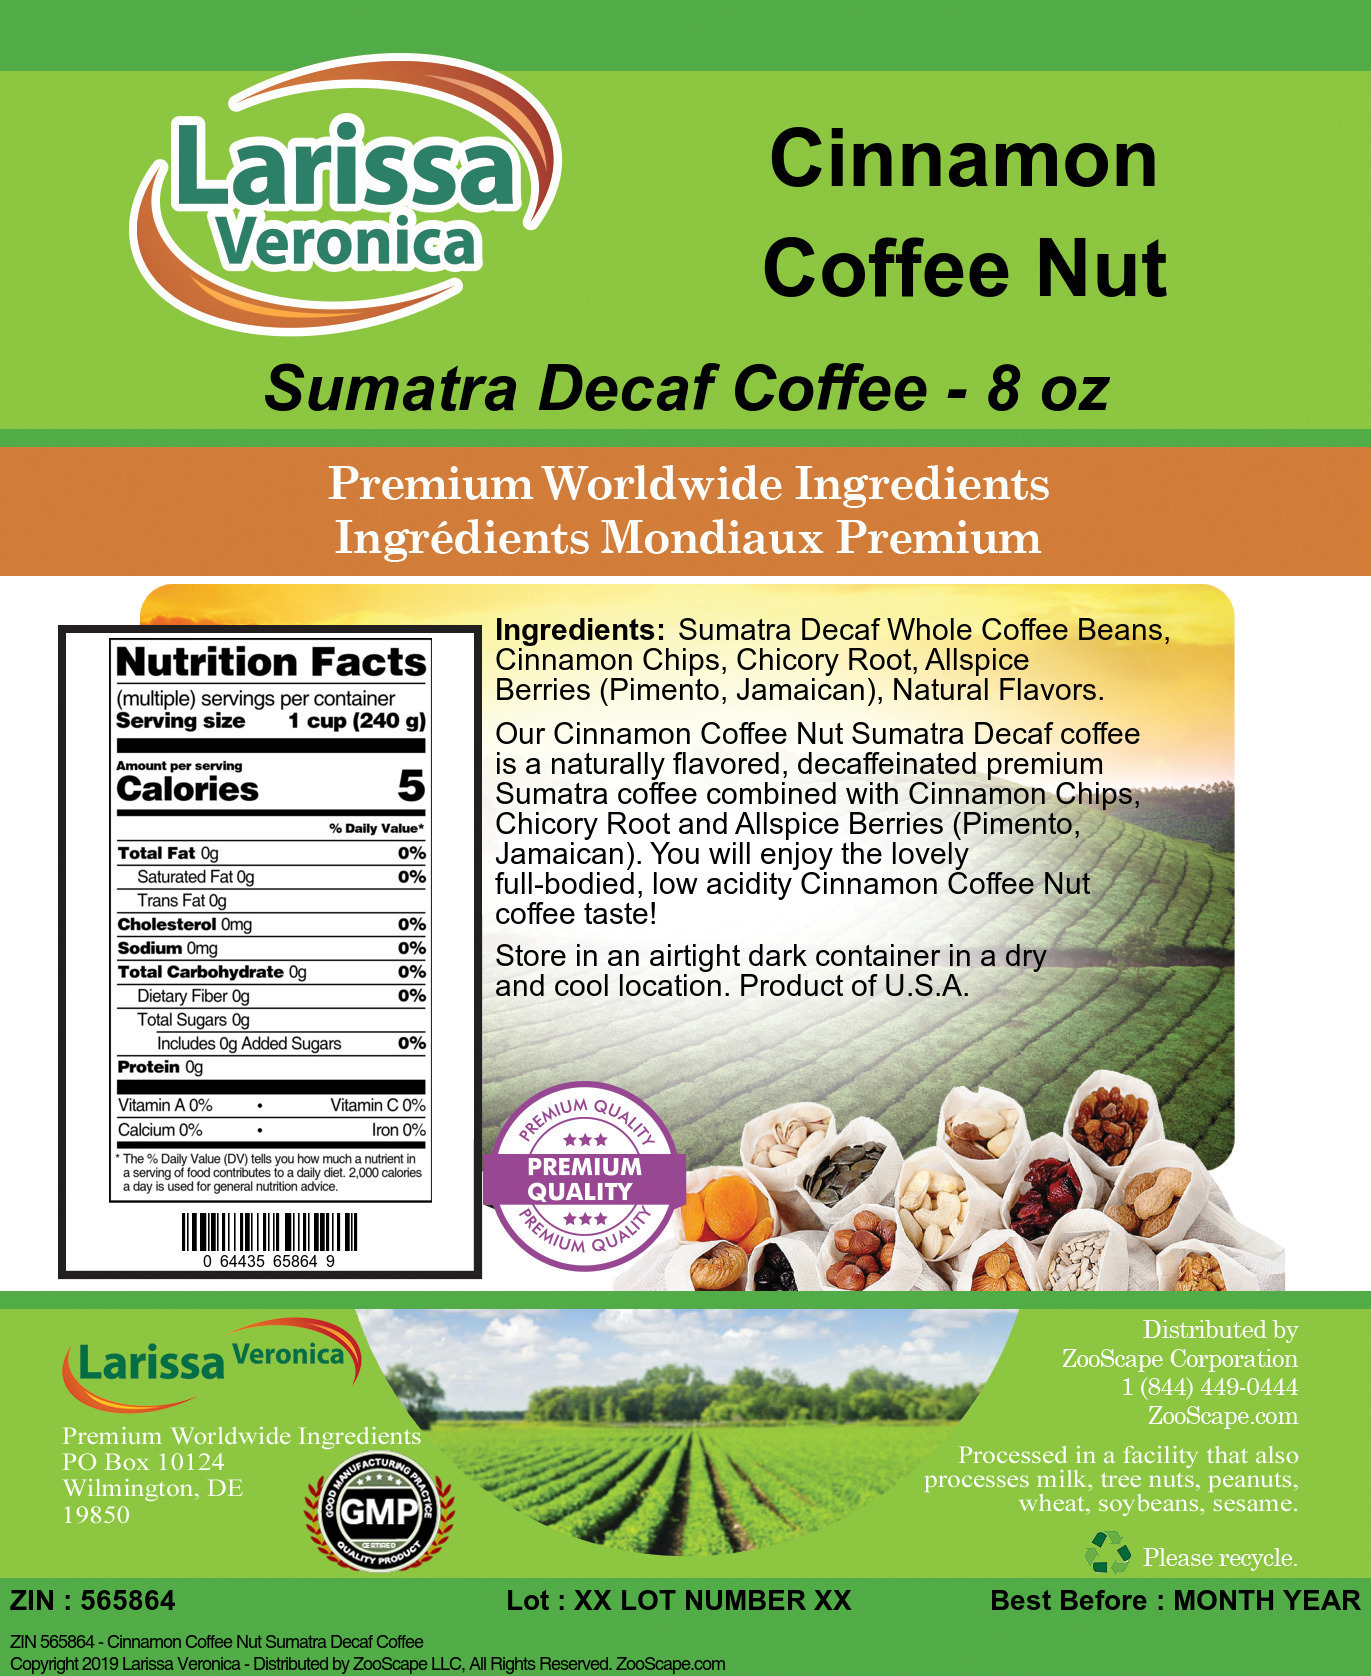 Cinnamon Coffee Nut Sumatra Decaf Coffee - Label